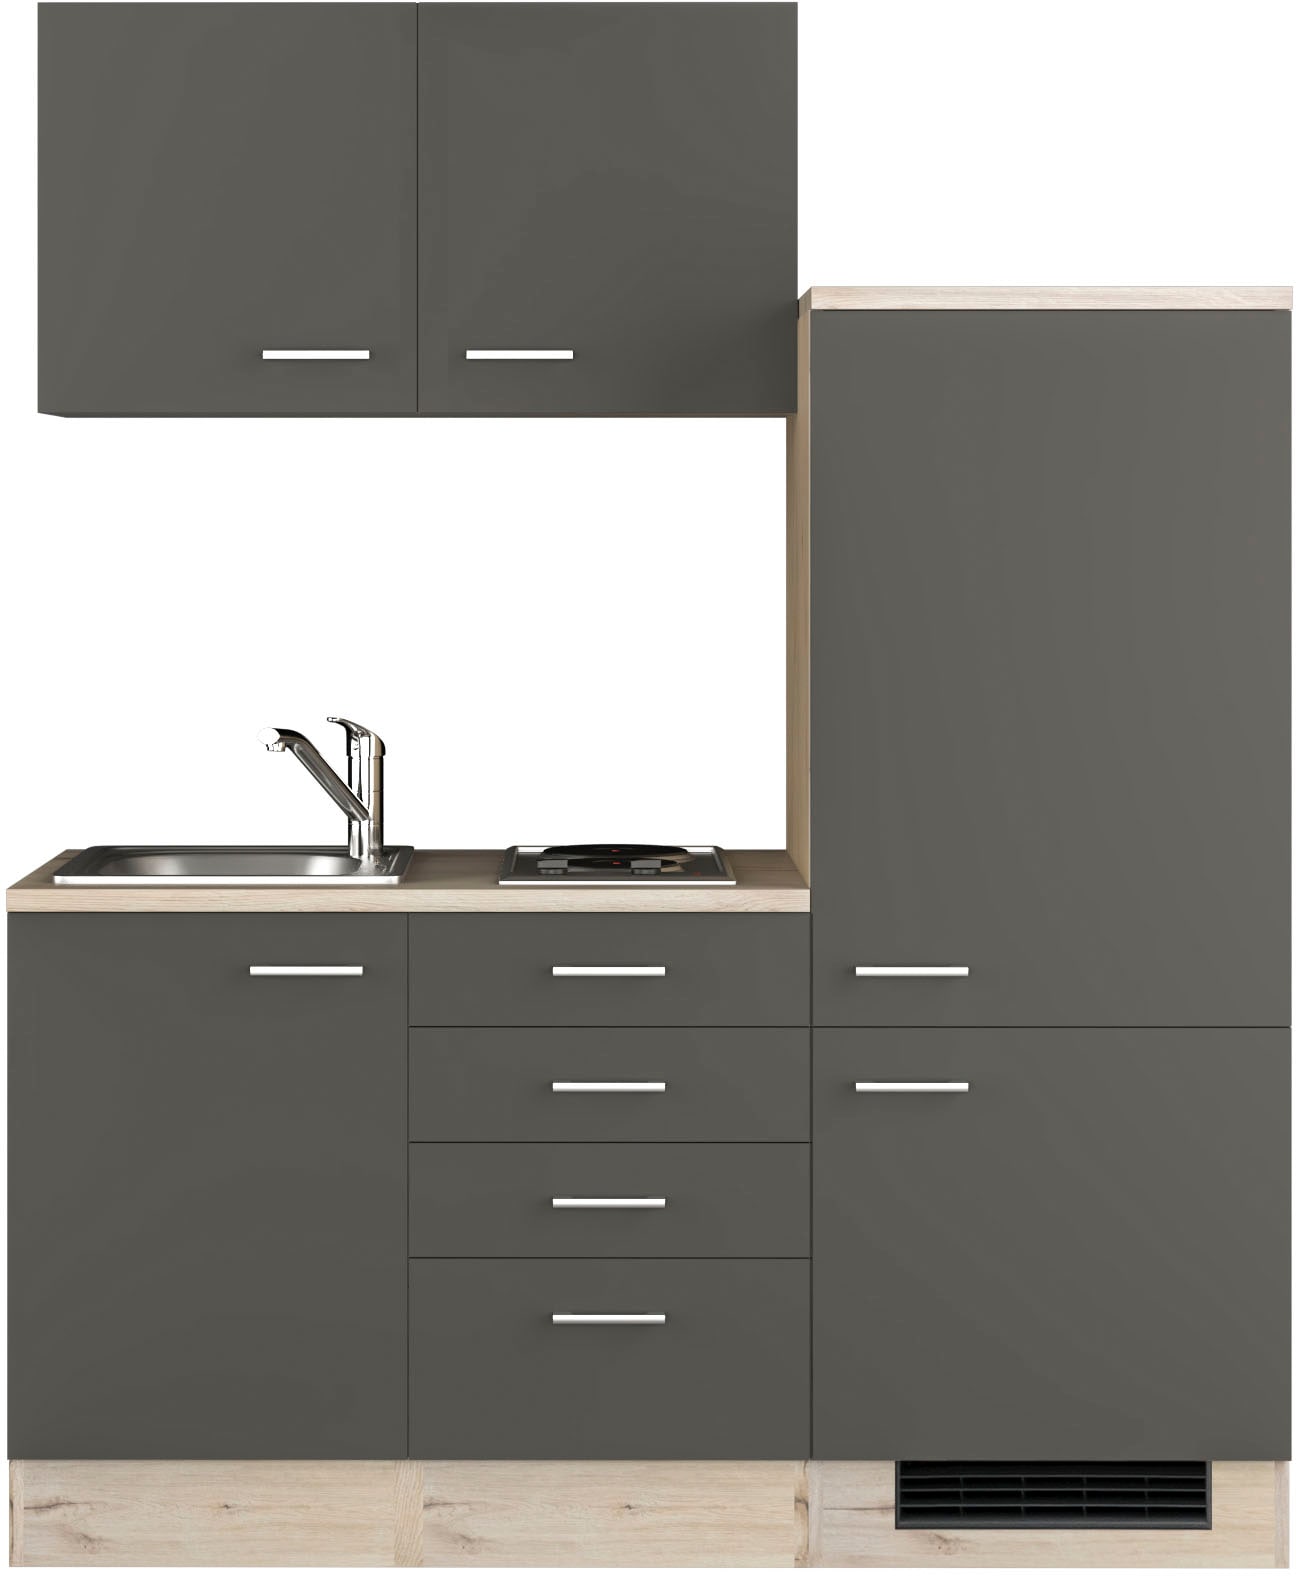 Küche »Morena«, Gesamtbreite 160 cm, mit Einbau-Kühlschrank, Kochfeld und Spüle, etc.